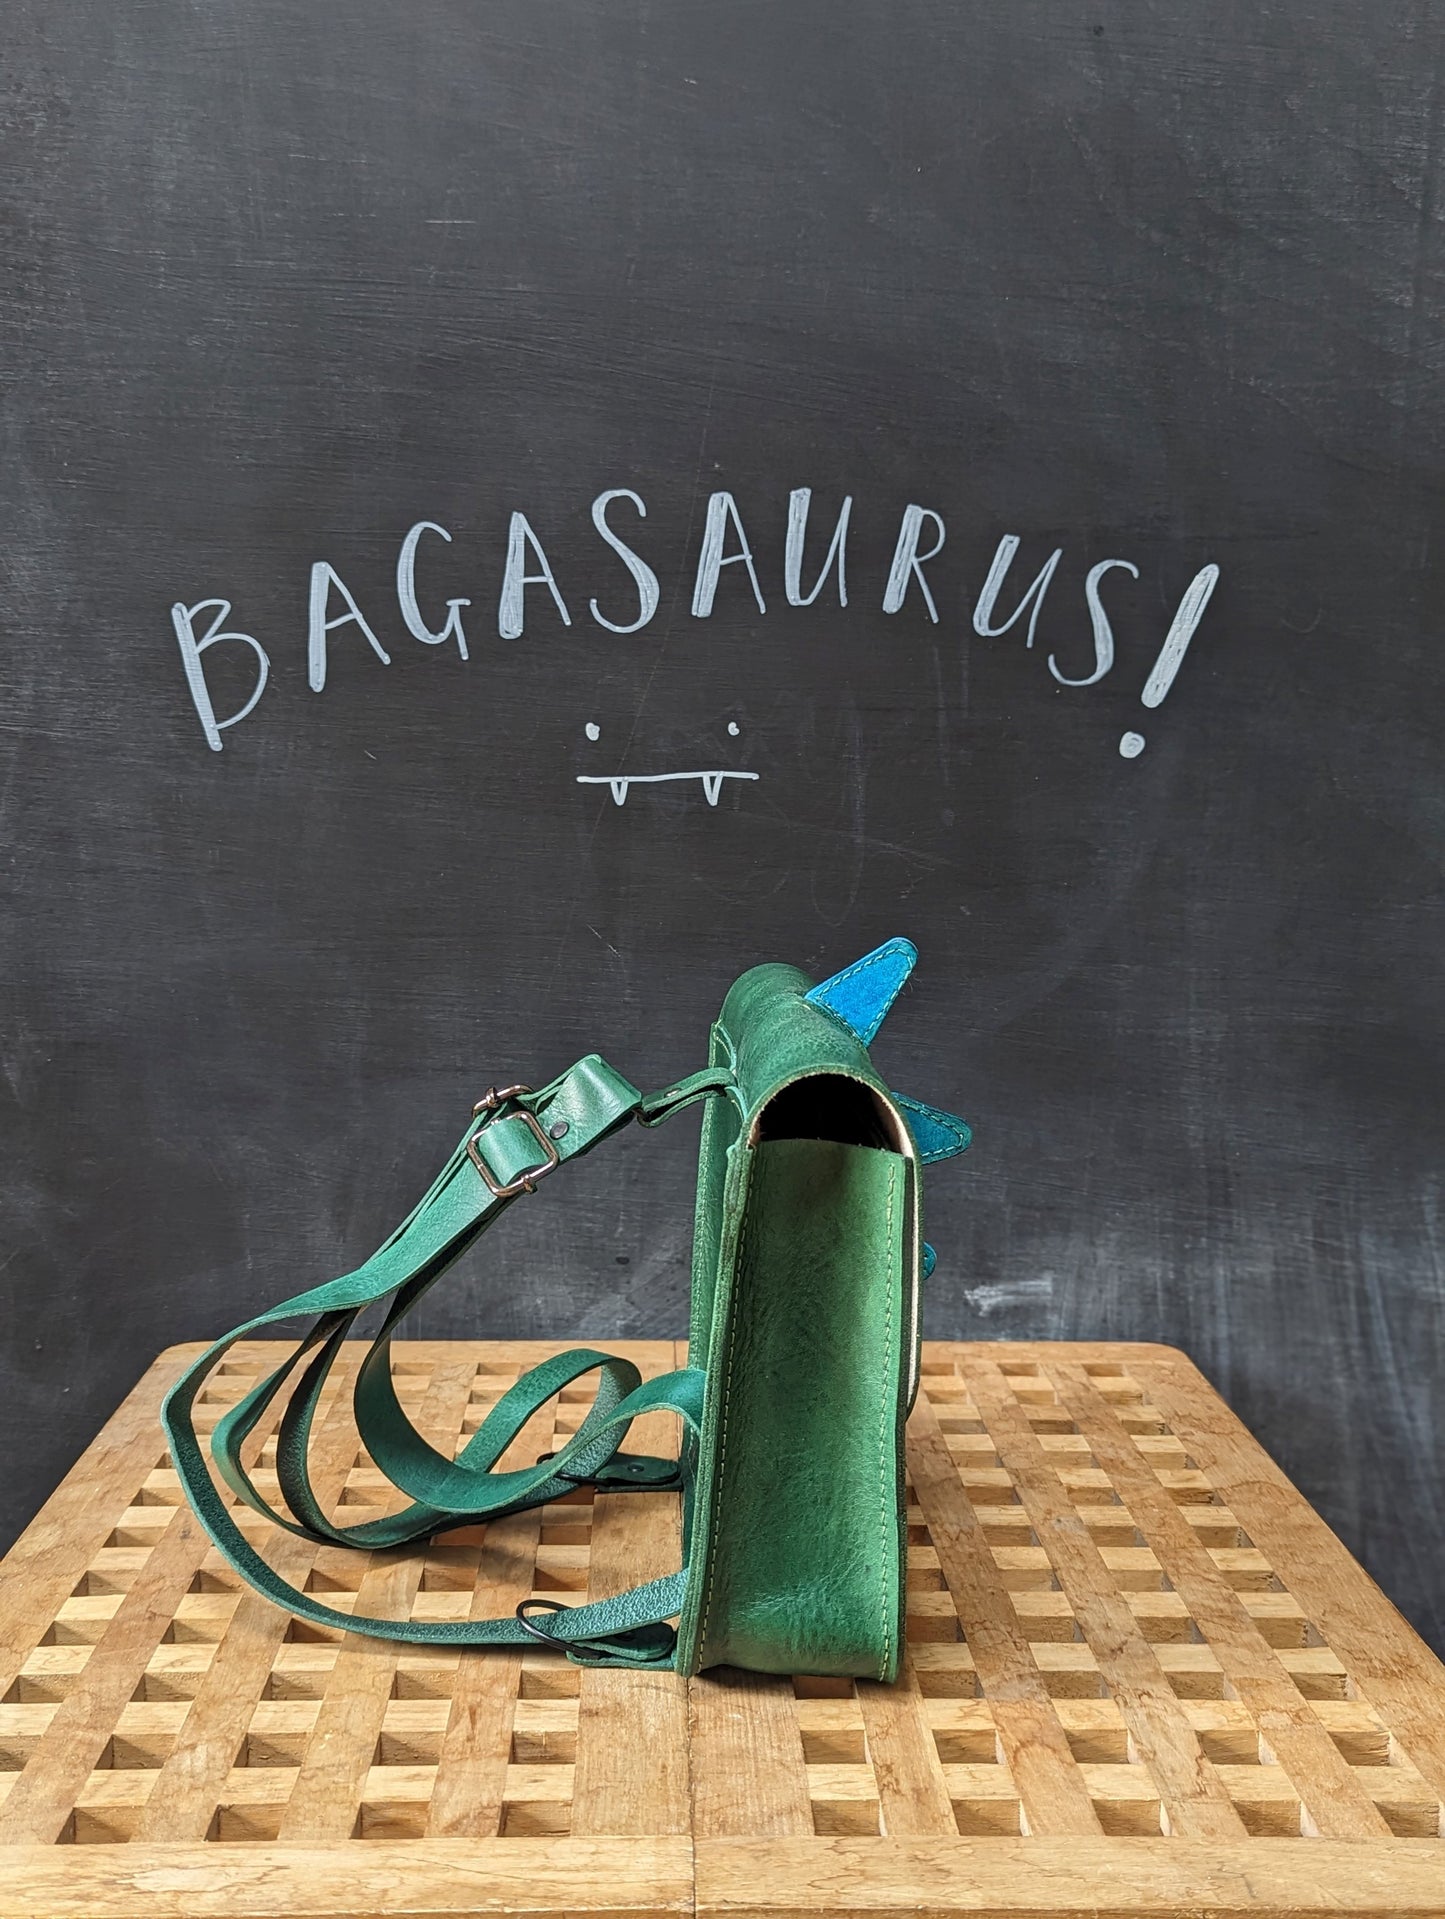 Bagasaurus Backpack